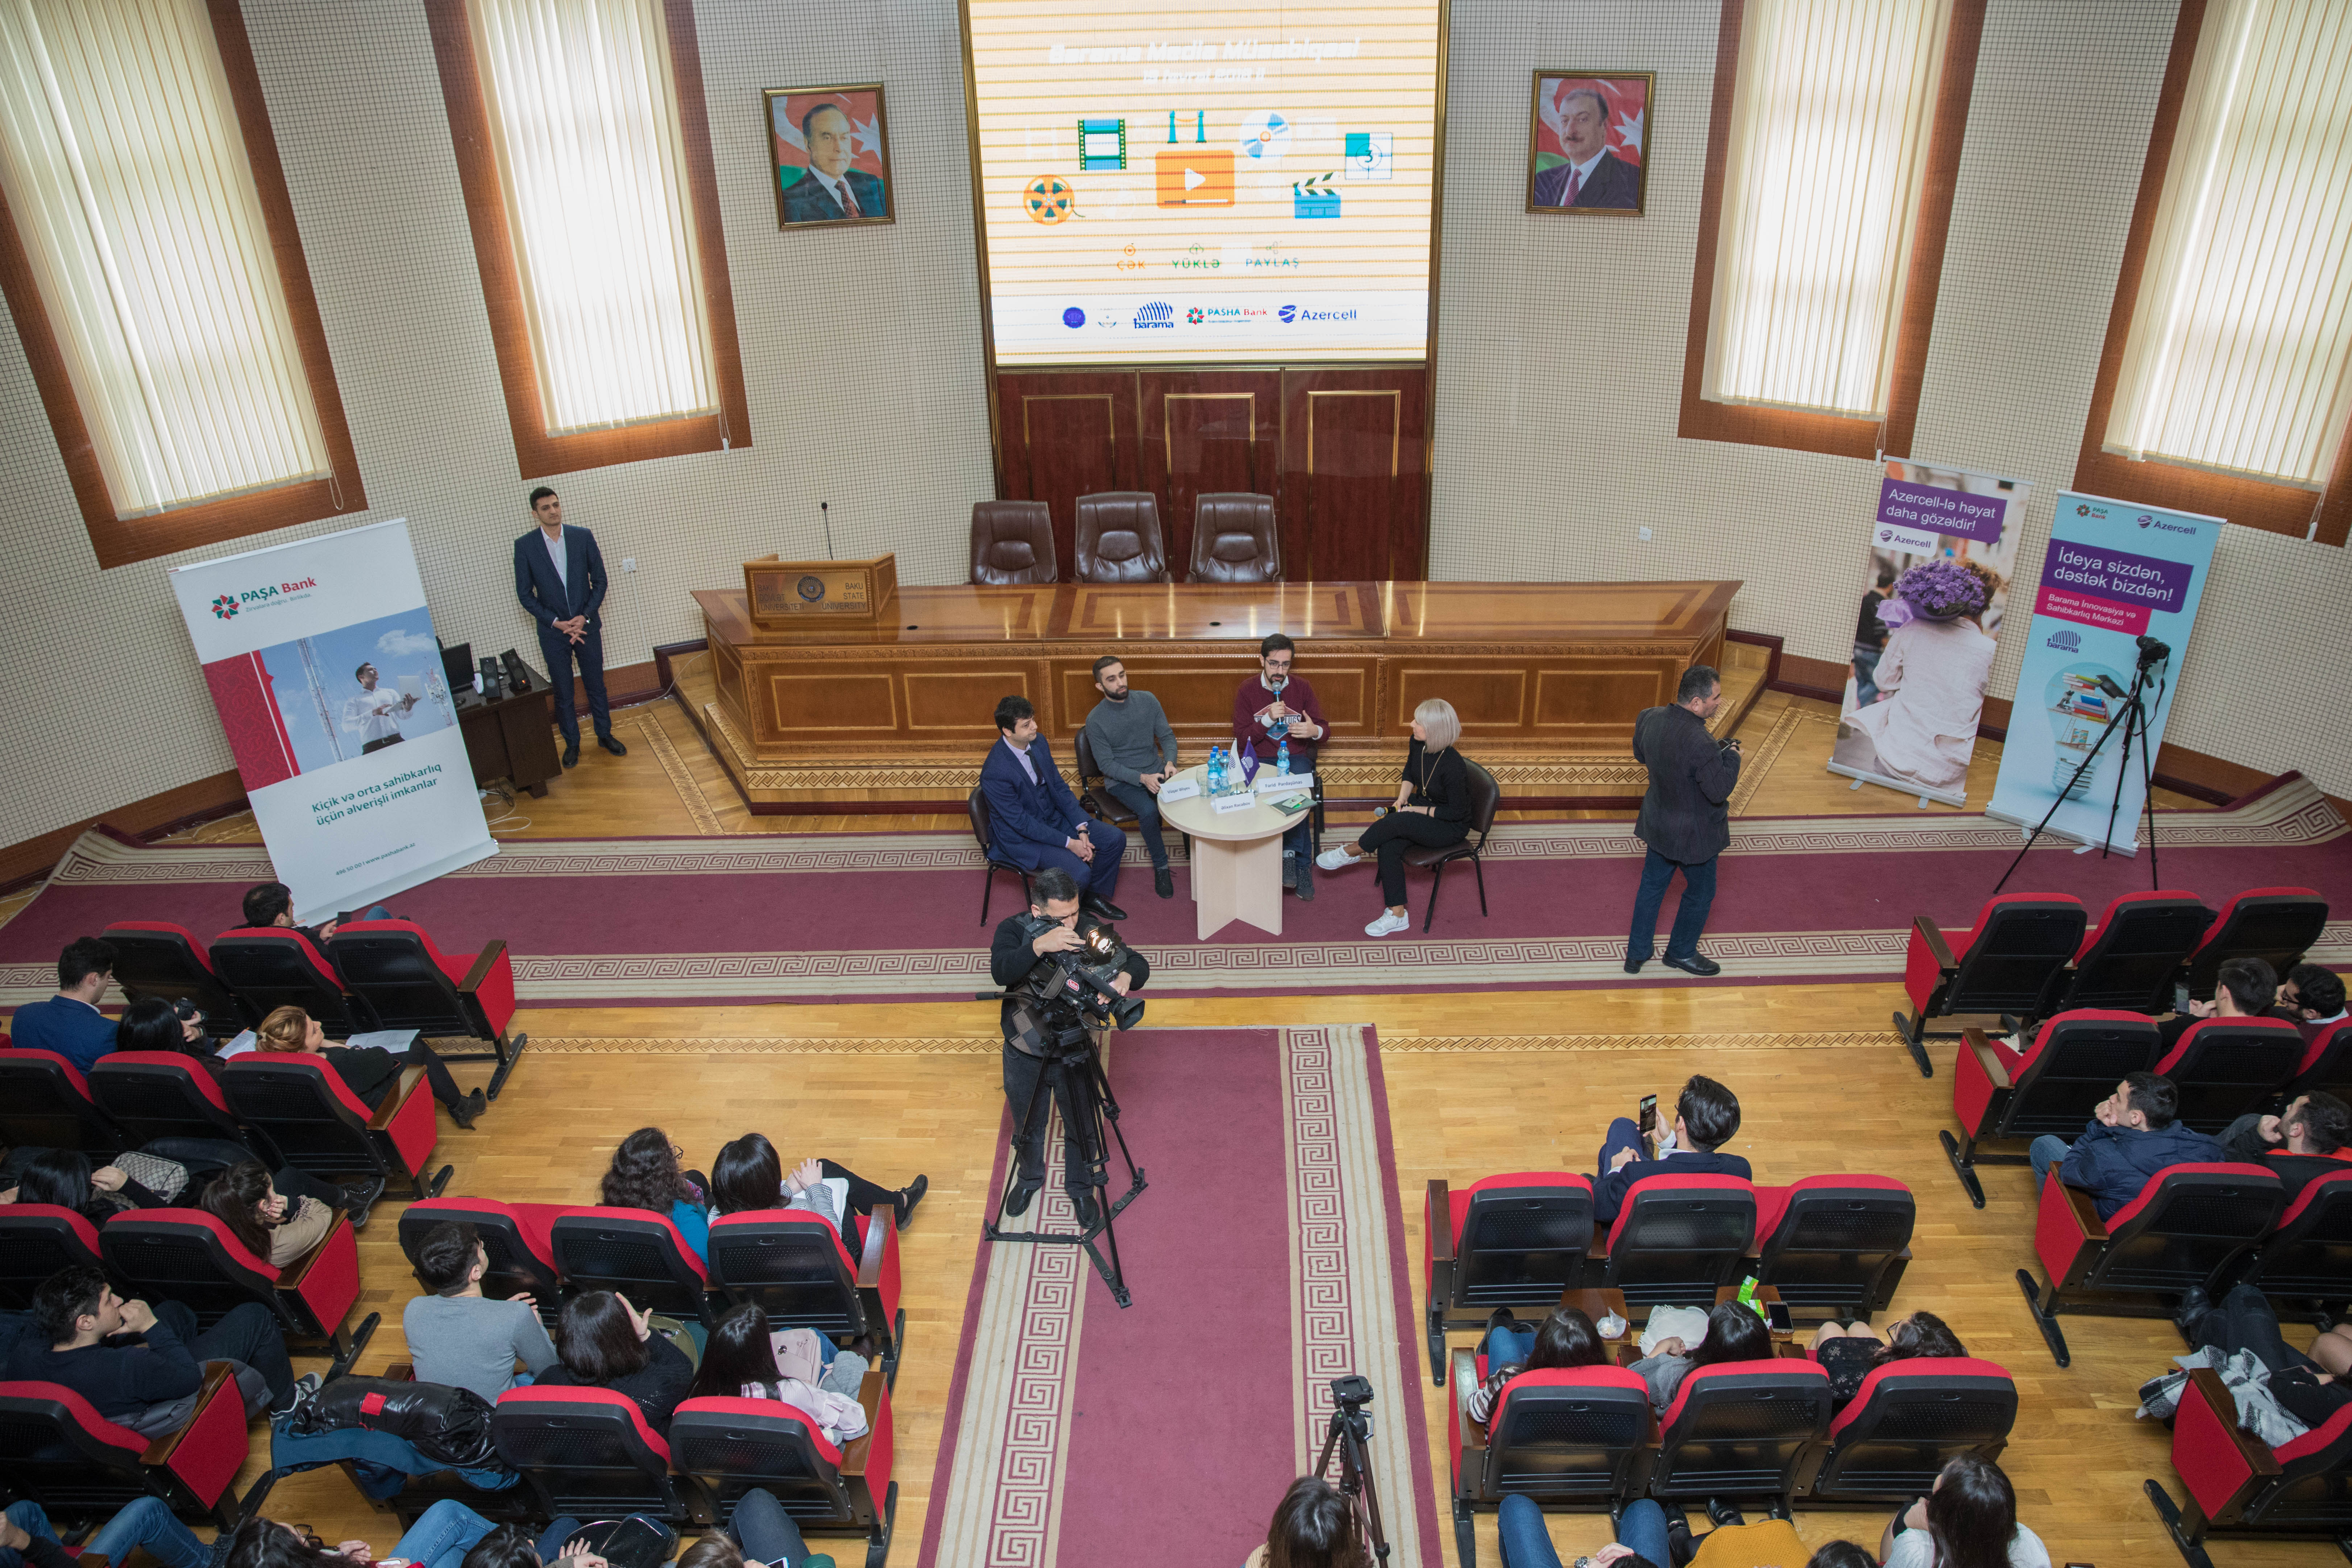 Award ceremony of Barama’s “Science via Media” project held 